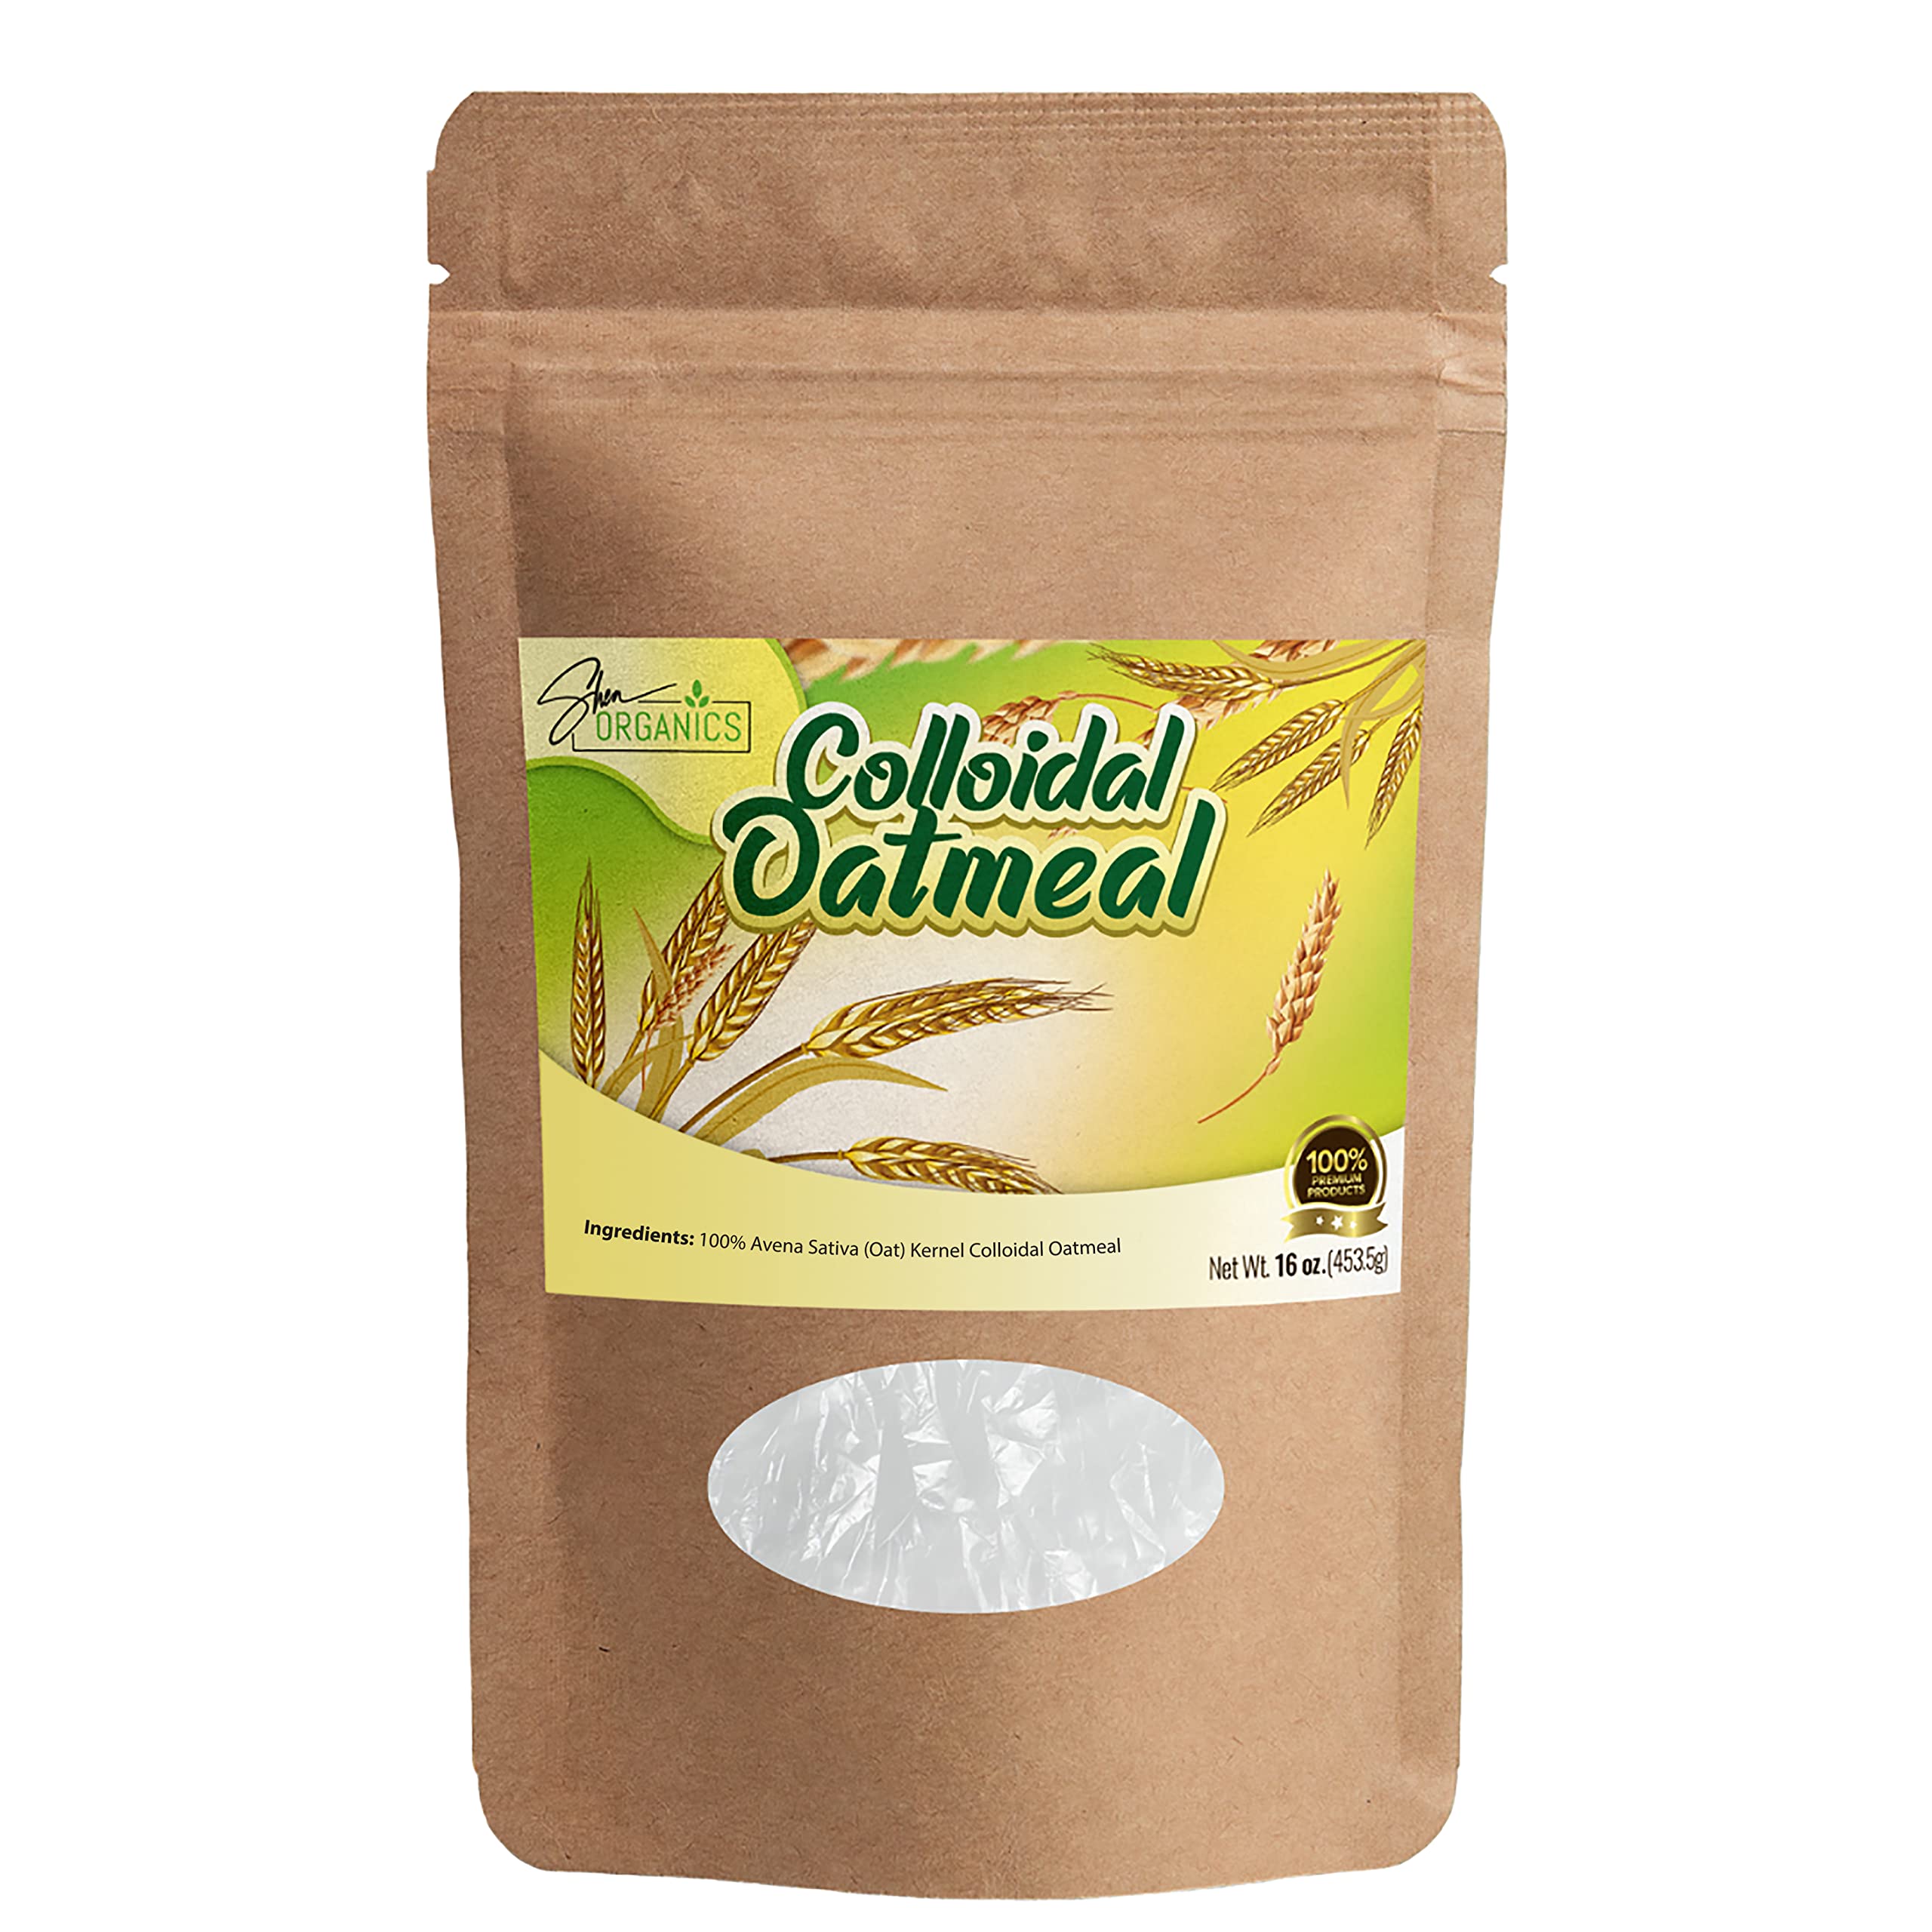 Shea Organics - Colloidal Oatmeal, Oatmeal Bath, Soap Making, Bulk  Oatmeal Powder